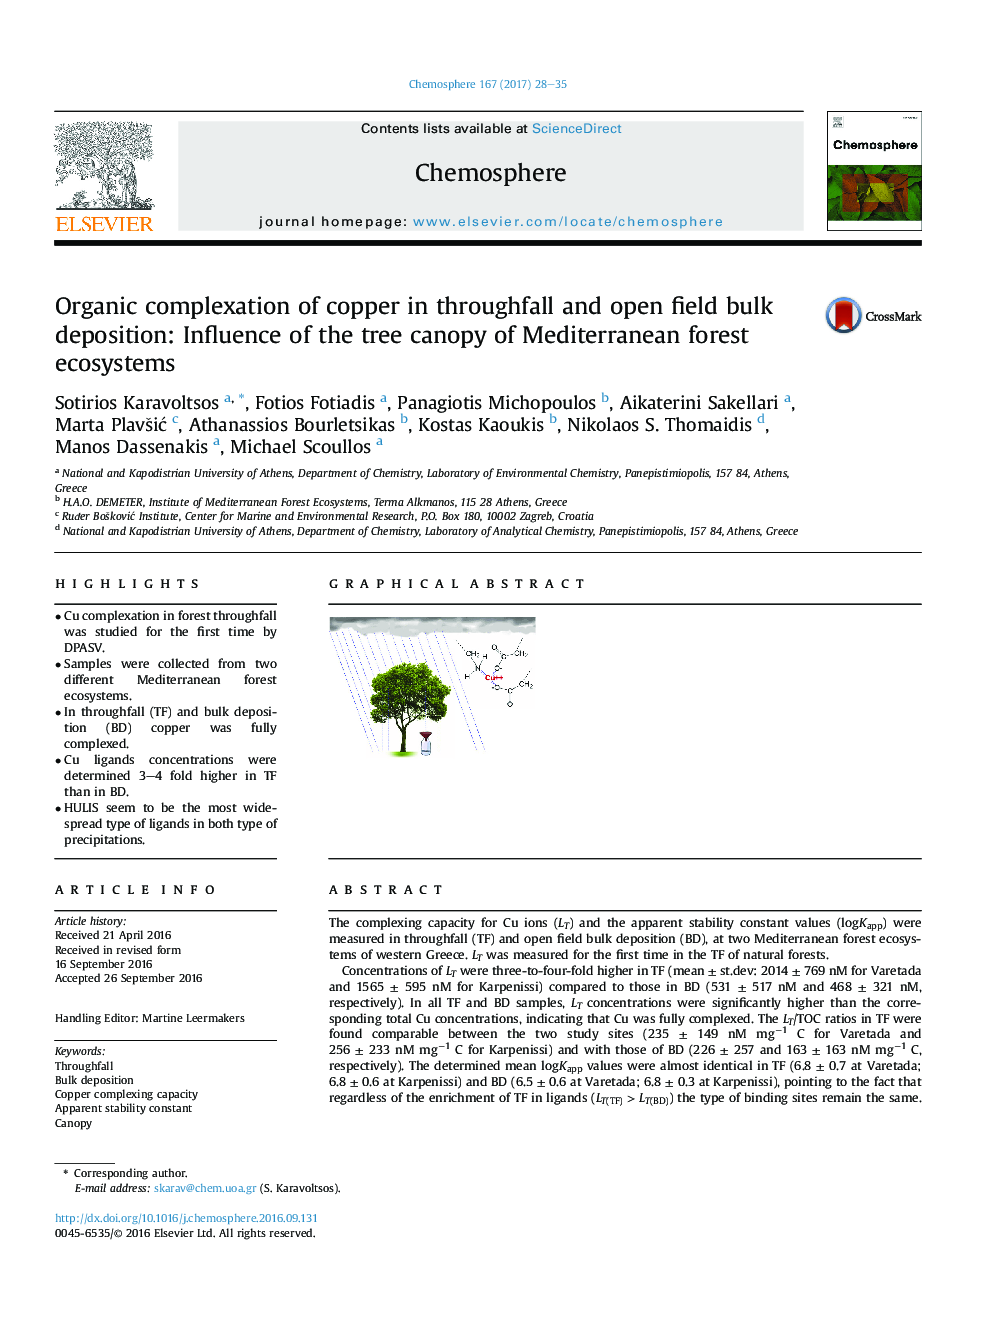 ترکیبات آلی مس در فرآورده های فرسوده و باز فیزیکی: تأثیر سایبان درخت اکوسیستم های جنگل مدیترانه